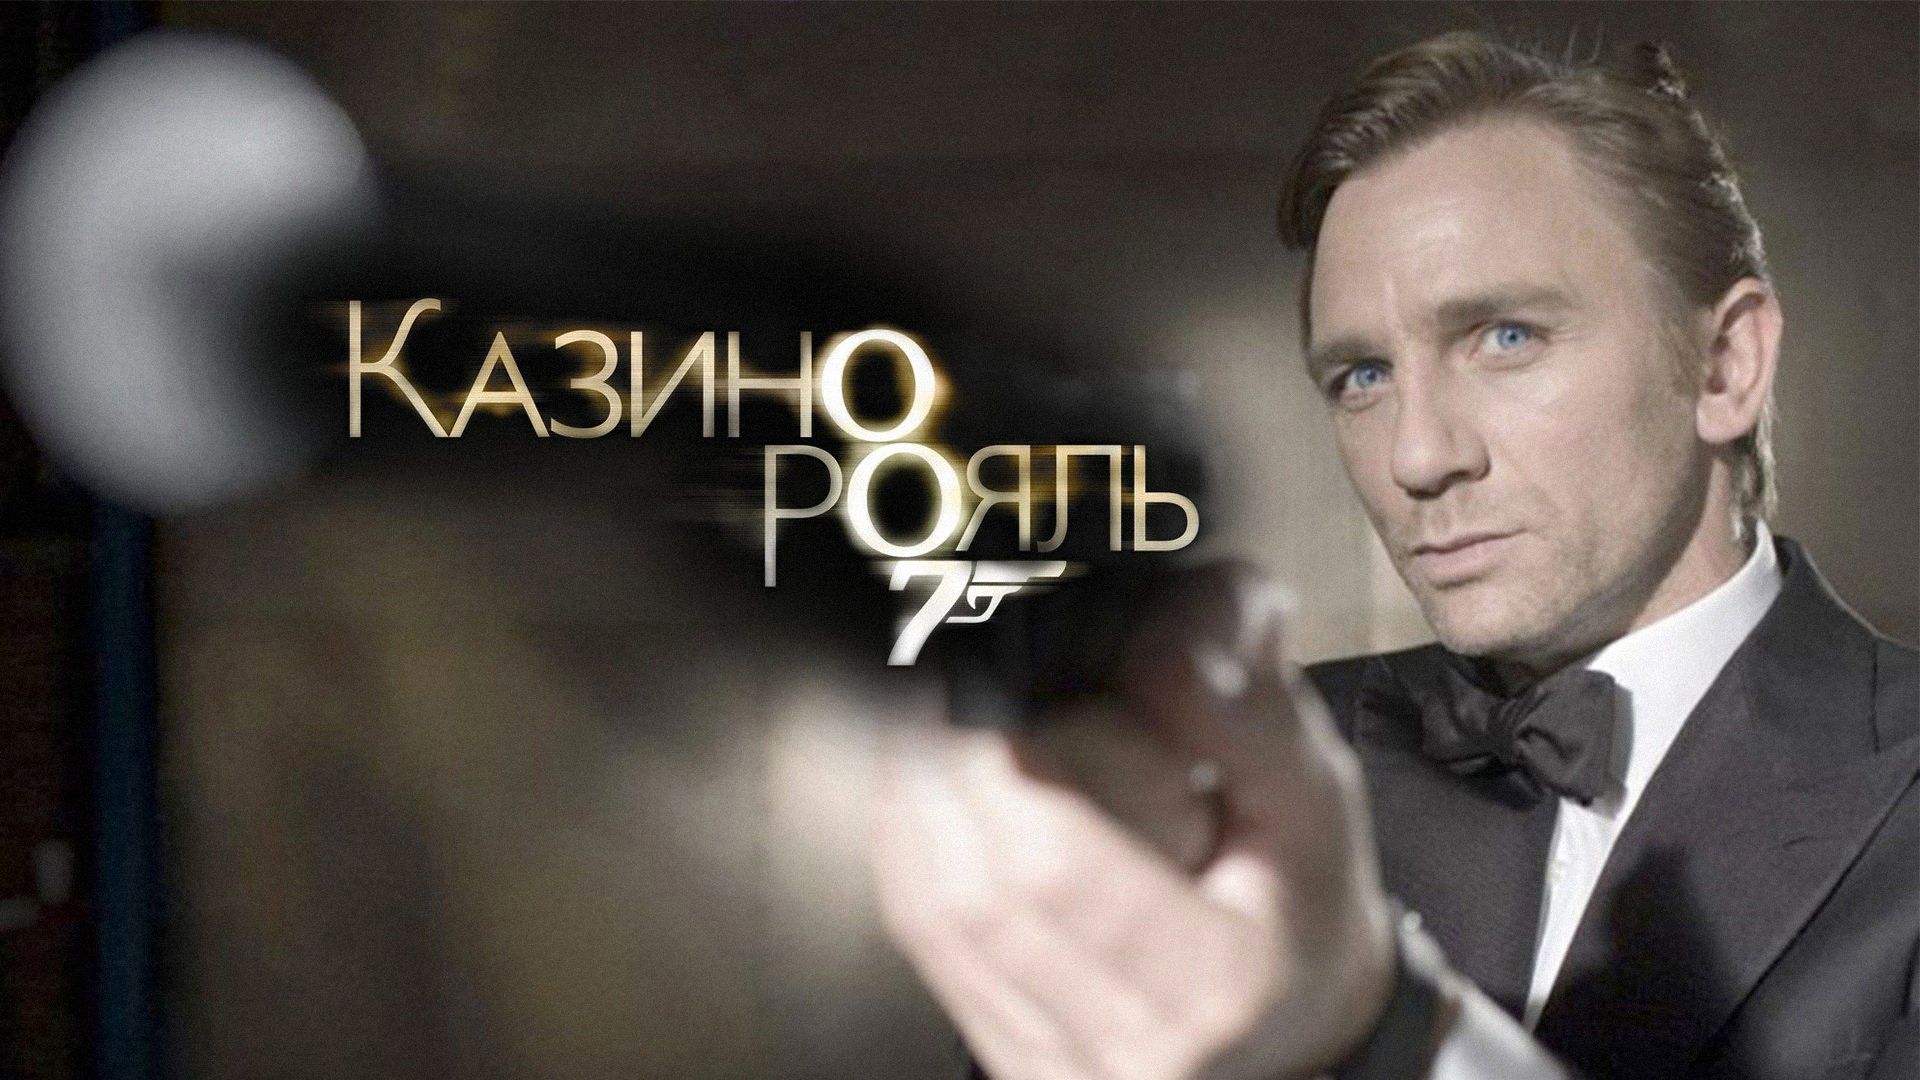 фильм агент 007 казино рояль смотреть онлайн бесплатно